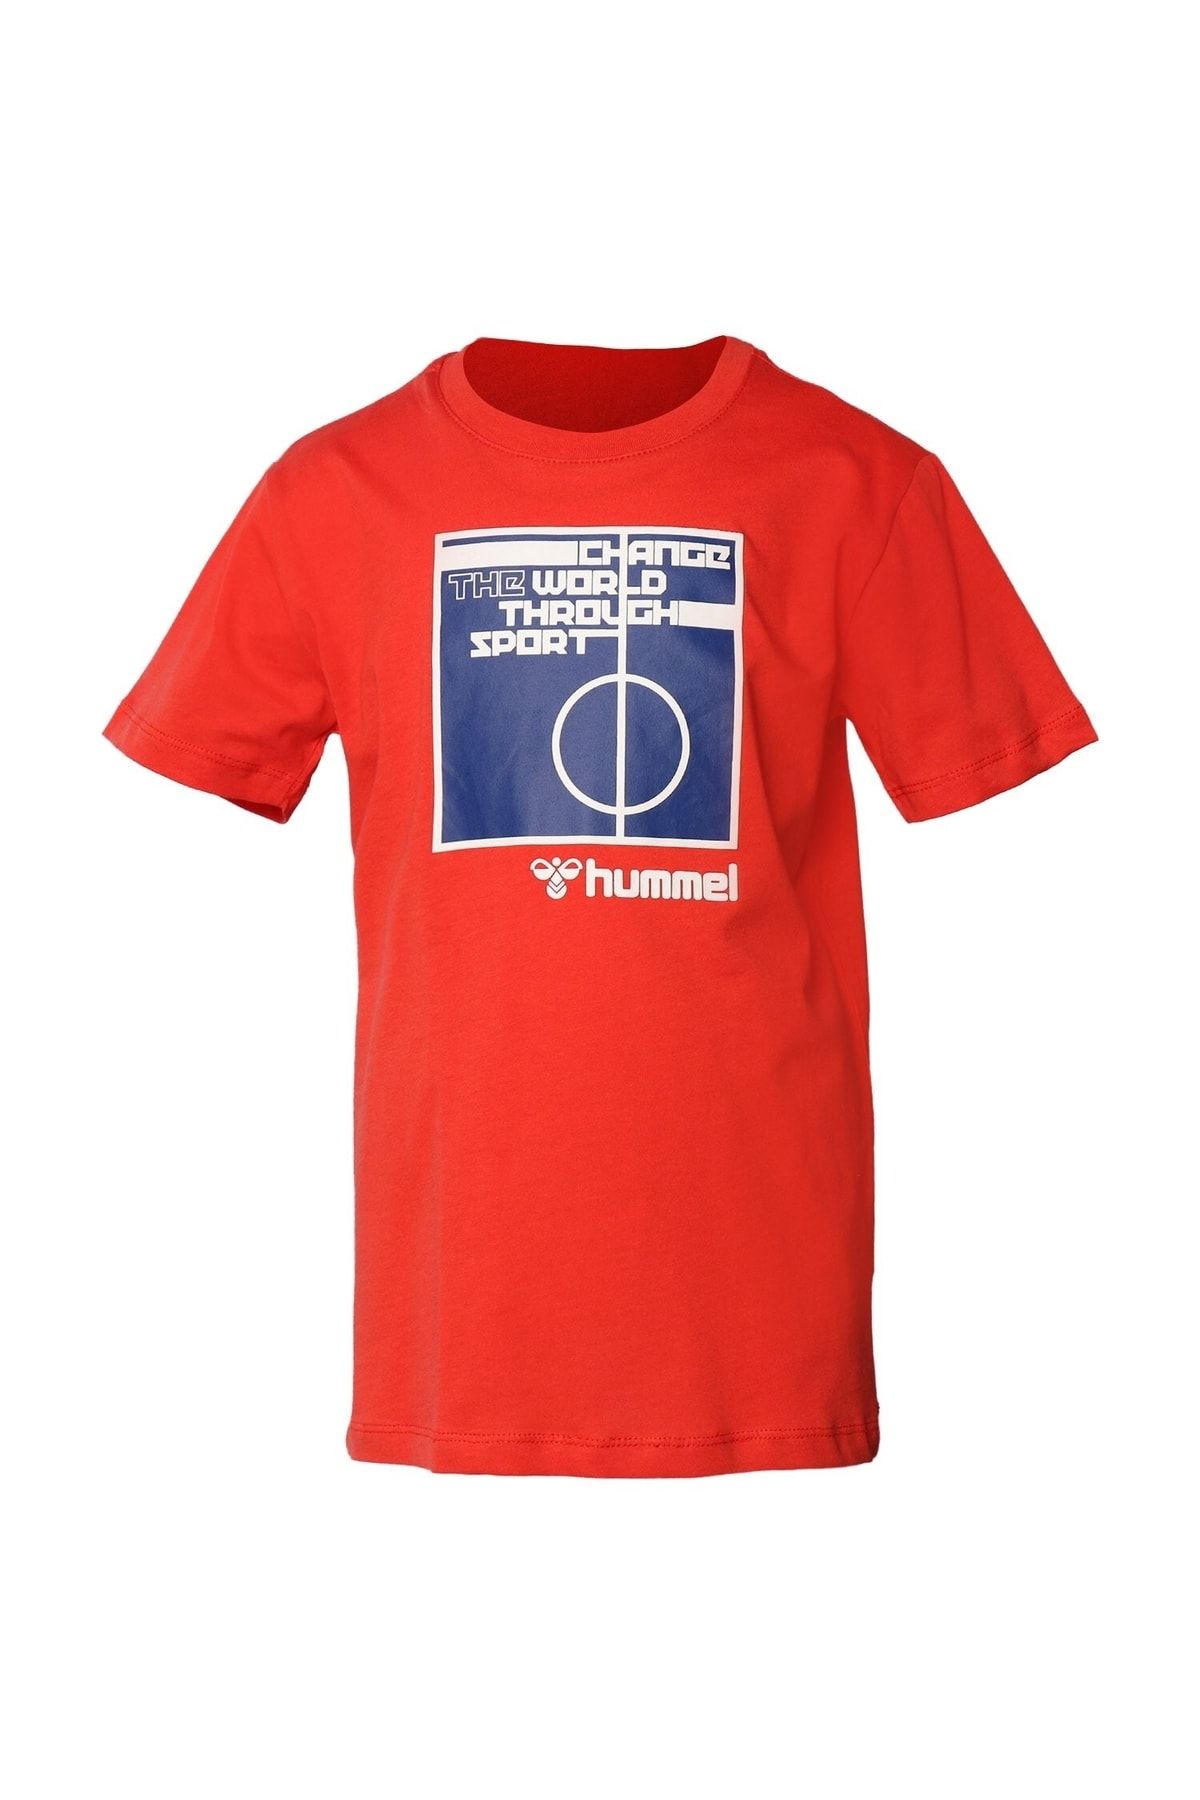 hummel Nala Çocuk T-shirt